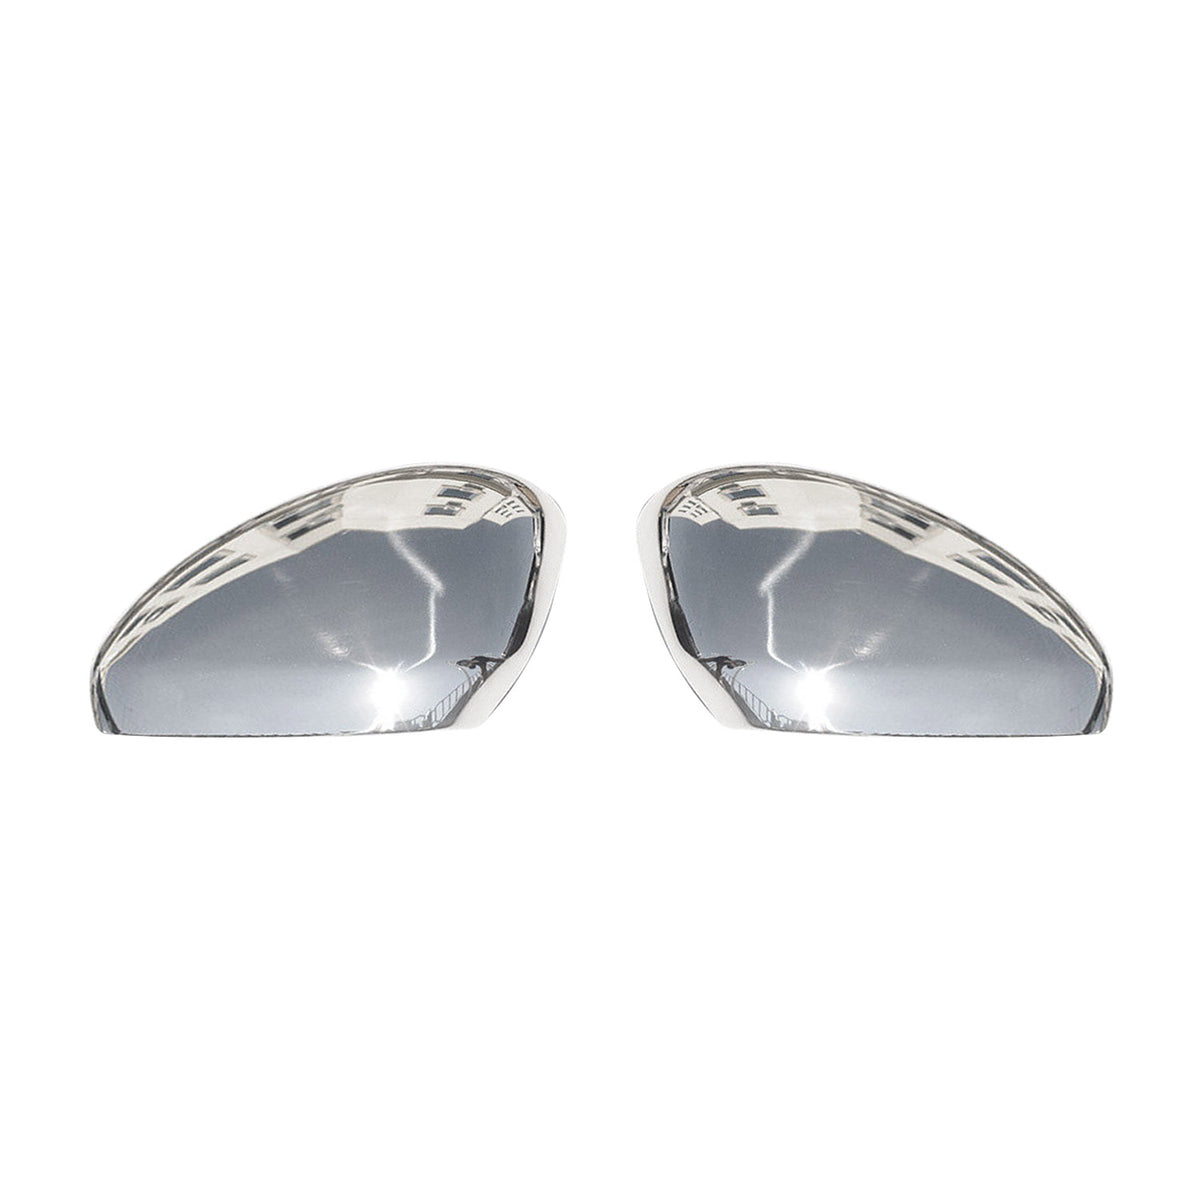 Spiegelkappen Spiegelabdeckung für Peugeot 508 2010-2018 Edelstahl Silber 2tlg